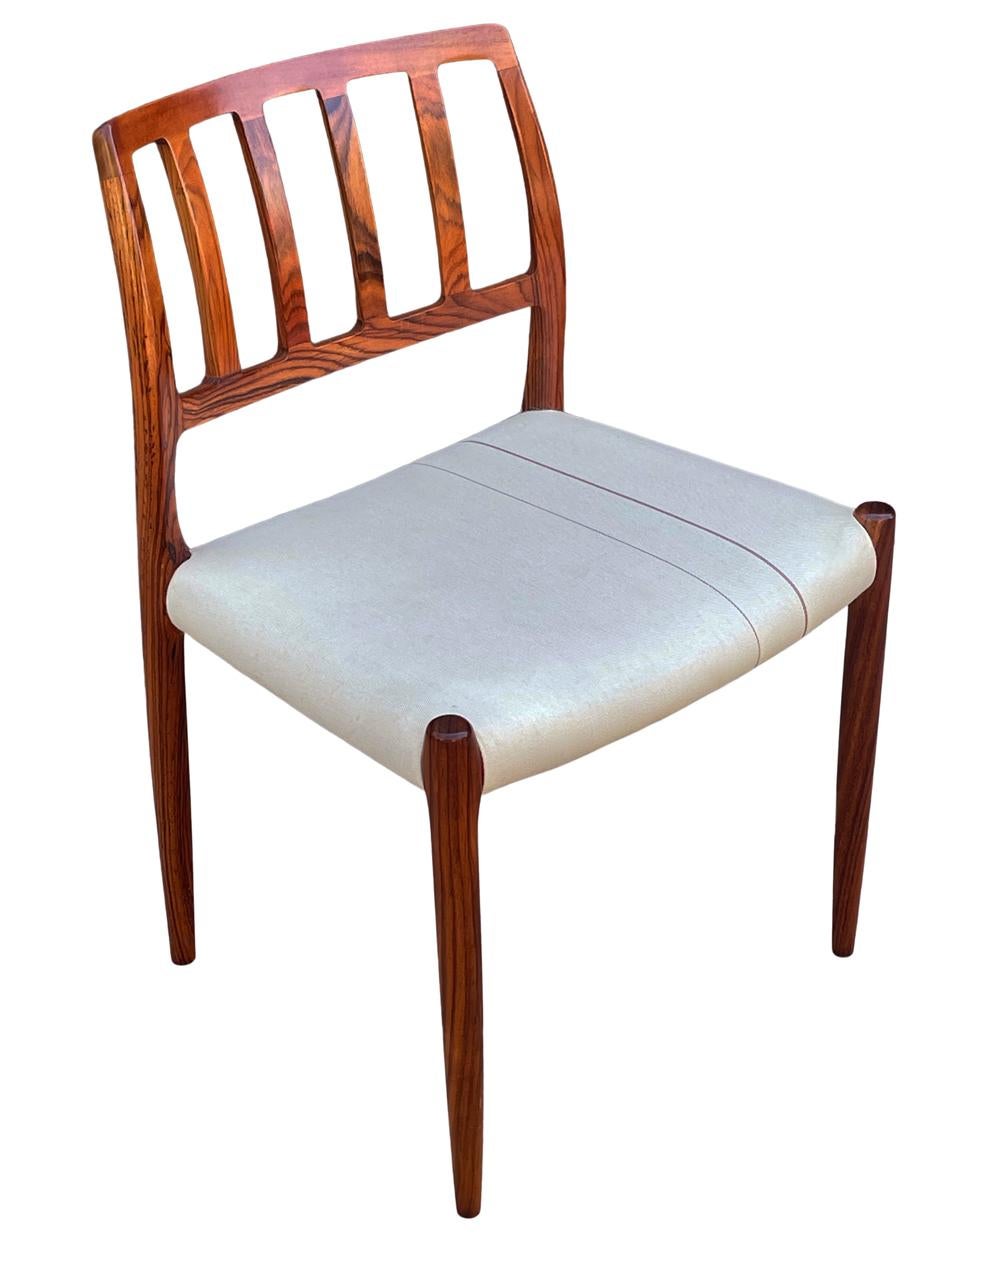 Un ensemble complet de 8 chaises de salle à manger conçu par Neils O. Möller et produit au Danemark vers les années 1960. Ils sont construits en bois de rose massif avec des coussins de siège en tissu d'origine. Les dossiers sculptés sont le point